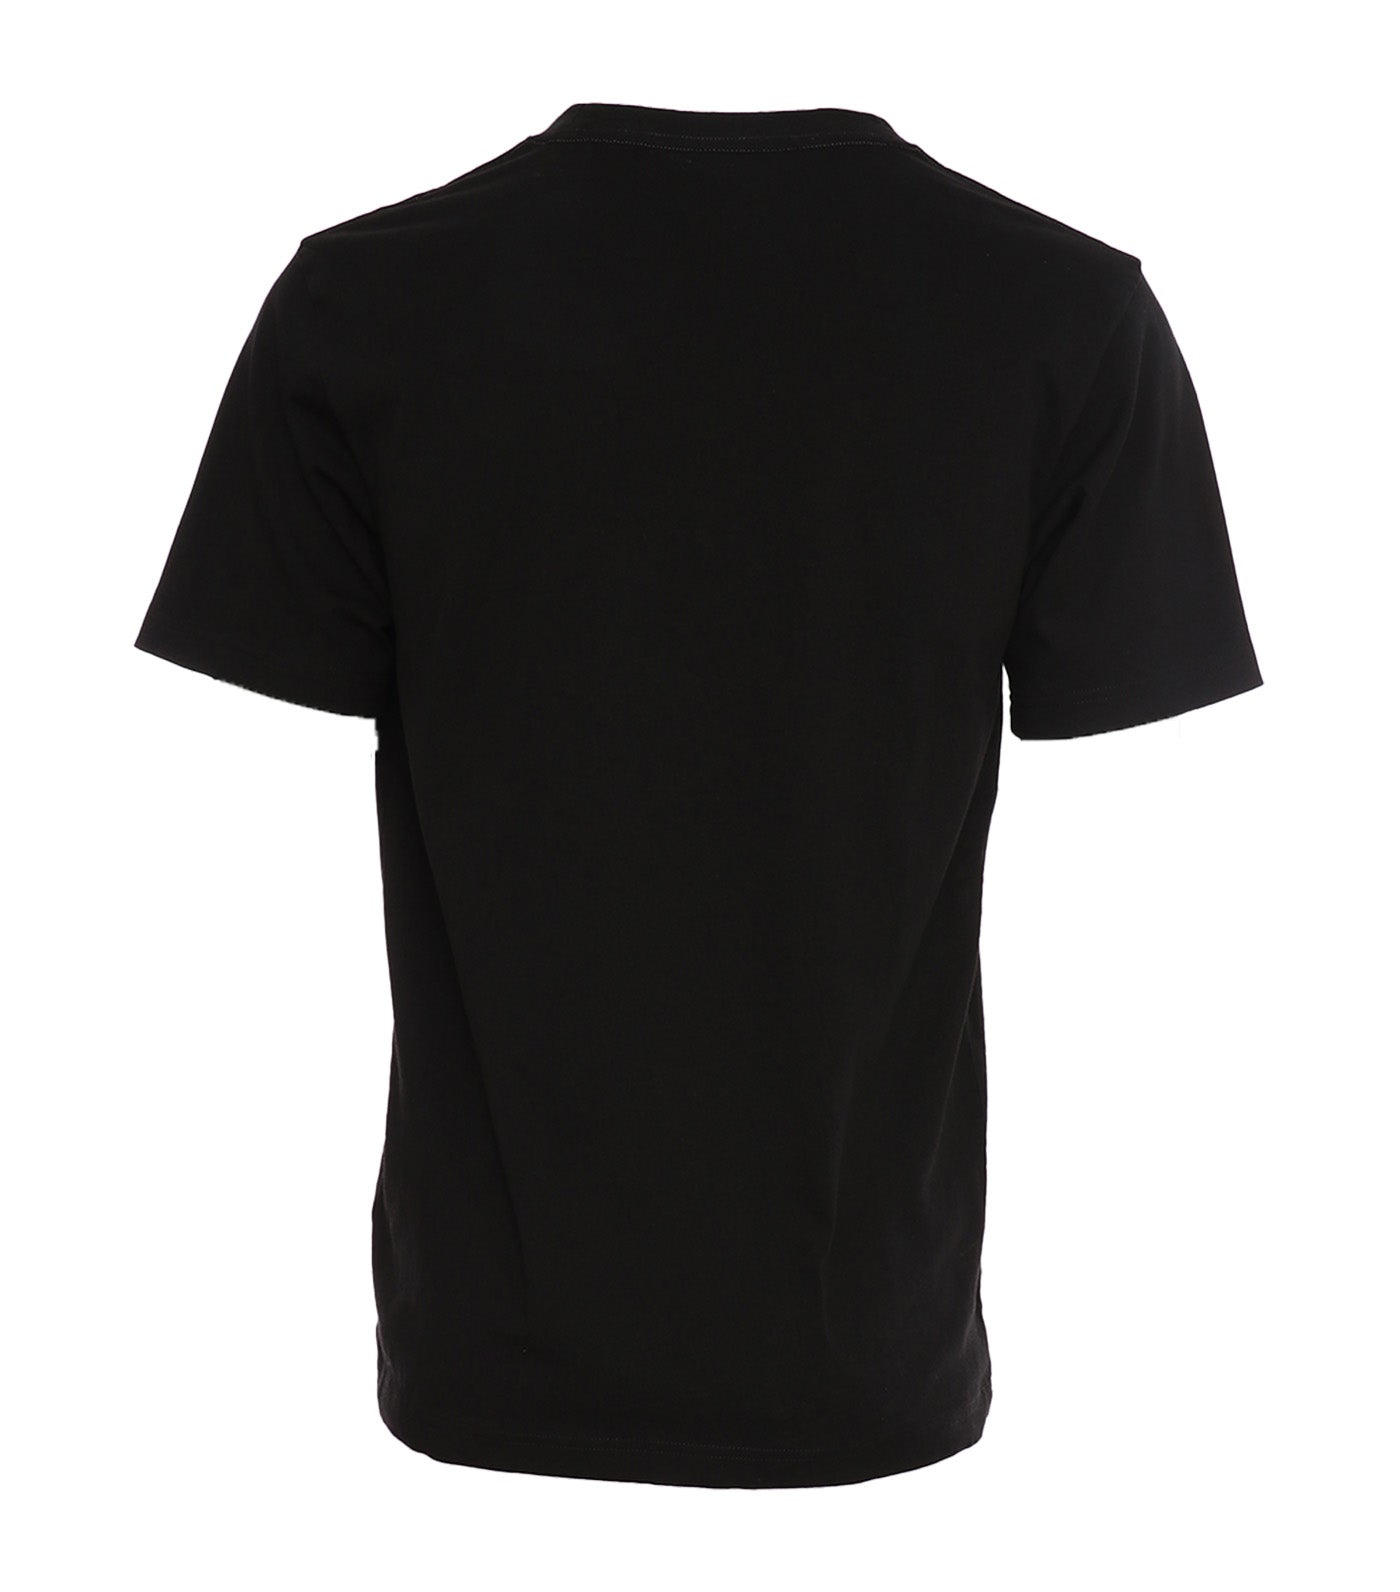 Japan C3-U306 Short Sleeve T-Shirt Black